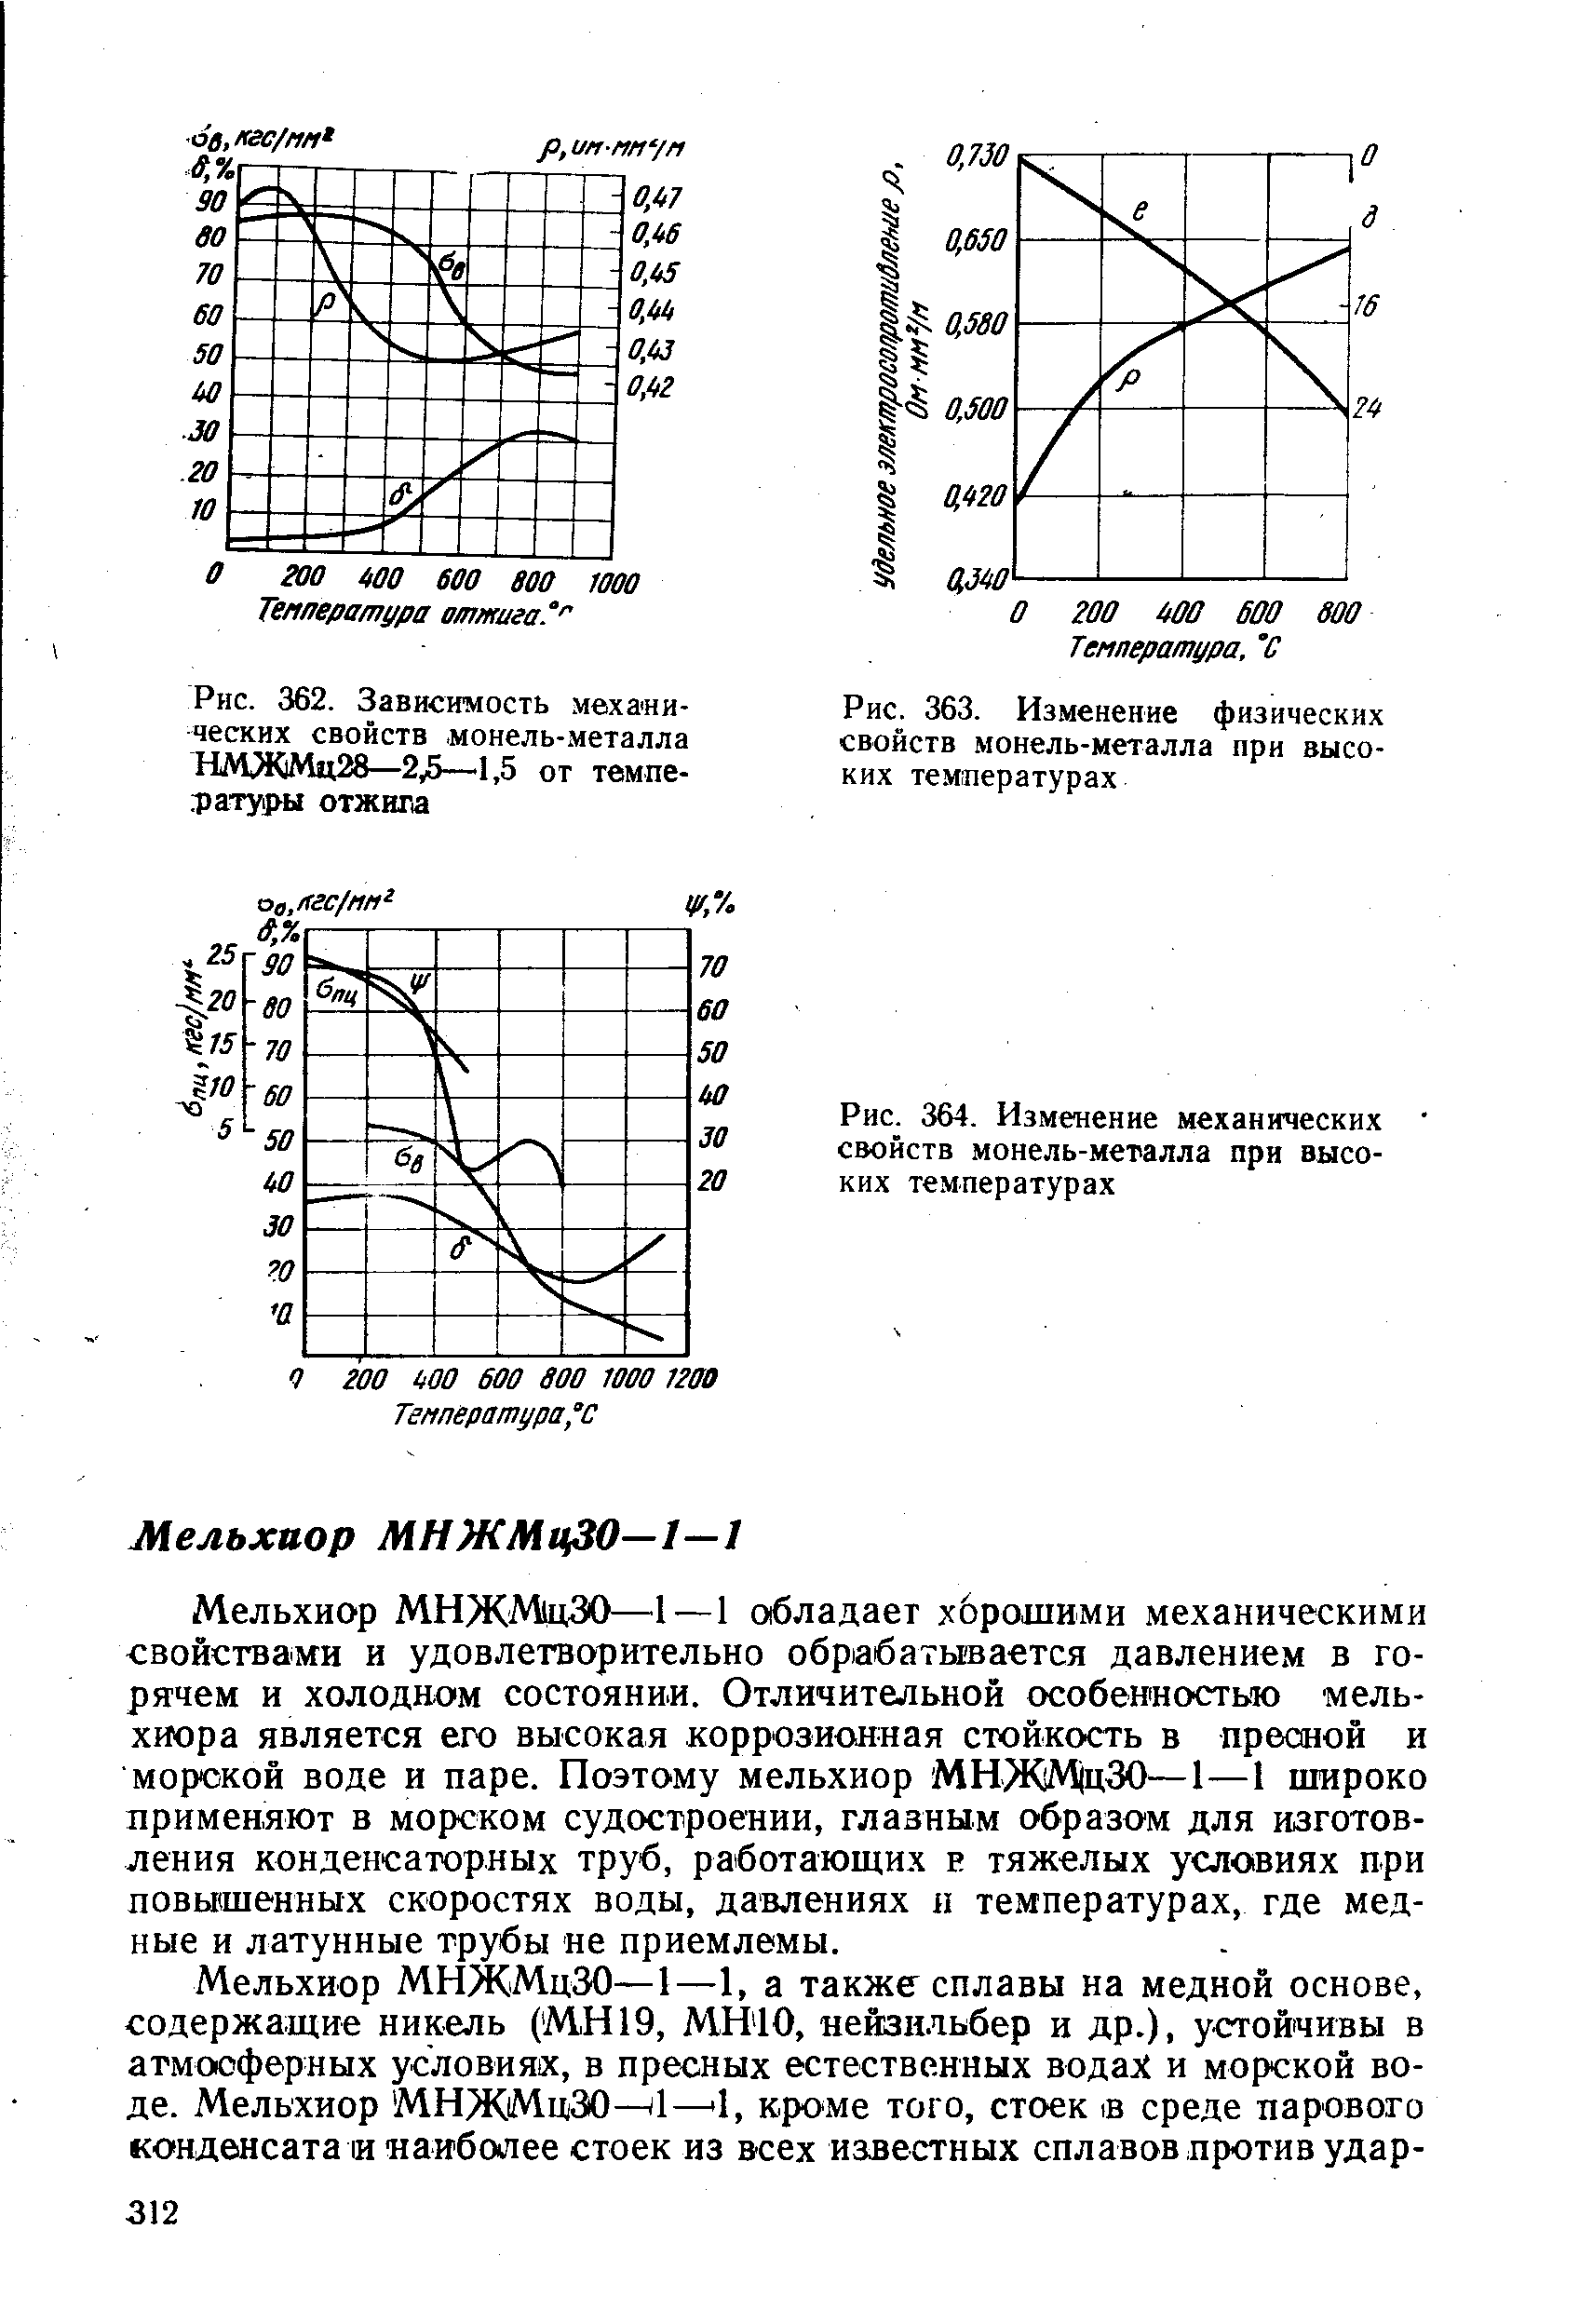 Рис. 362. Зависимость механических свойств монель-металла НМЖМц28—2у5—1,5 от темпе-тату 1>ы отжига
